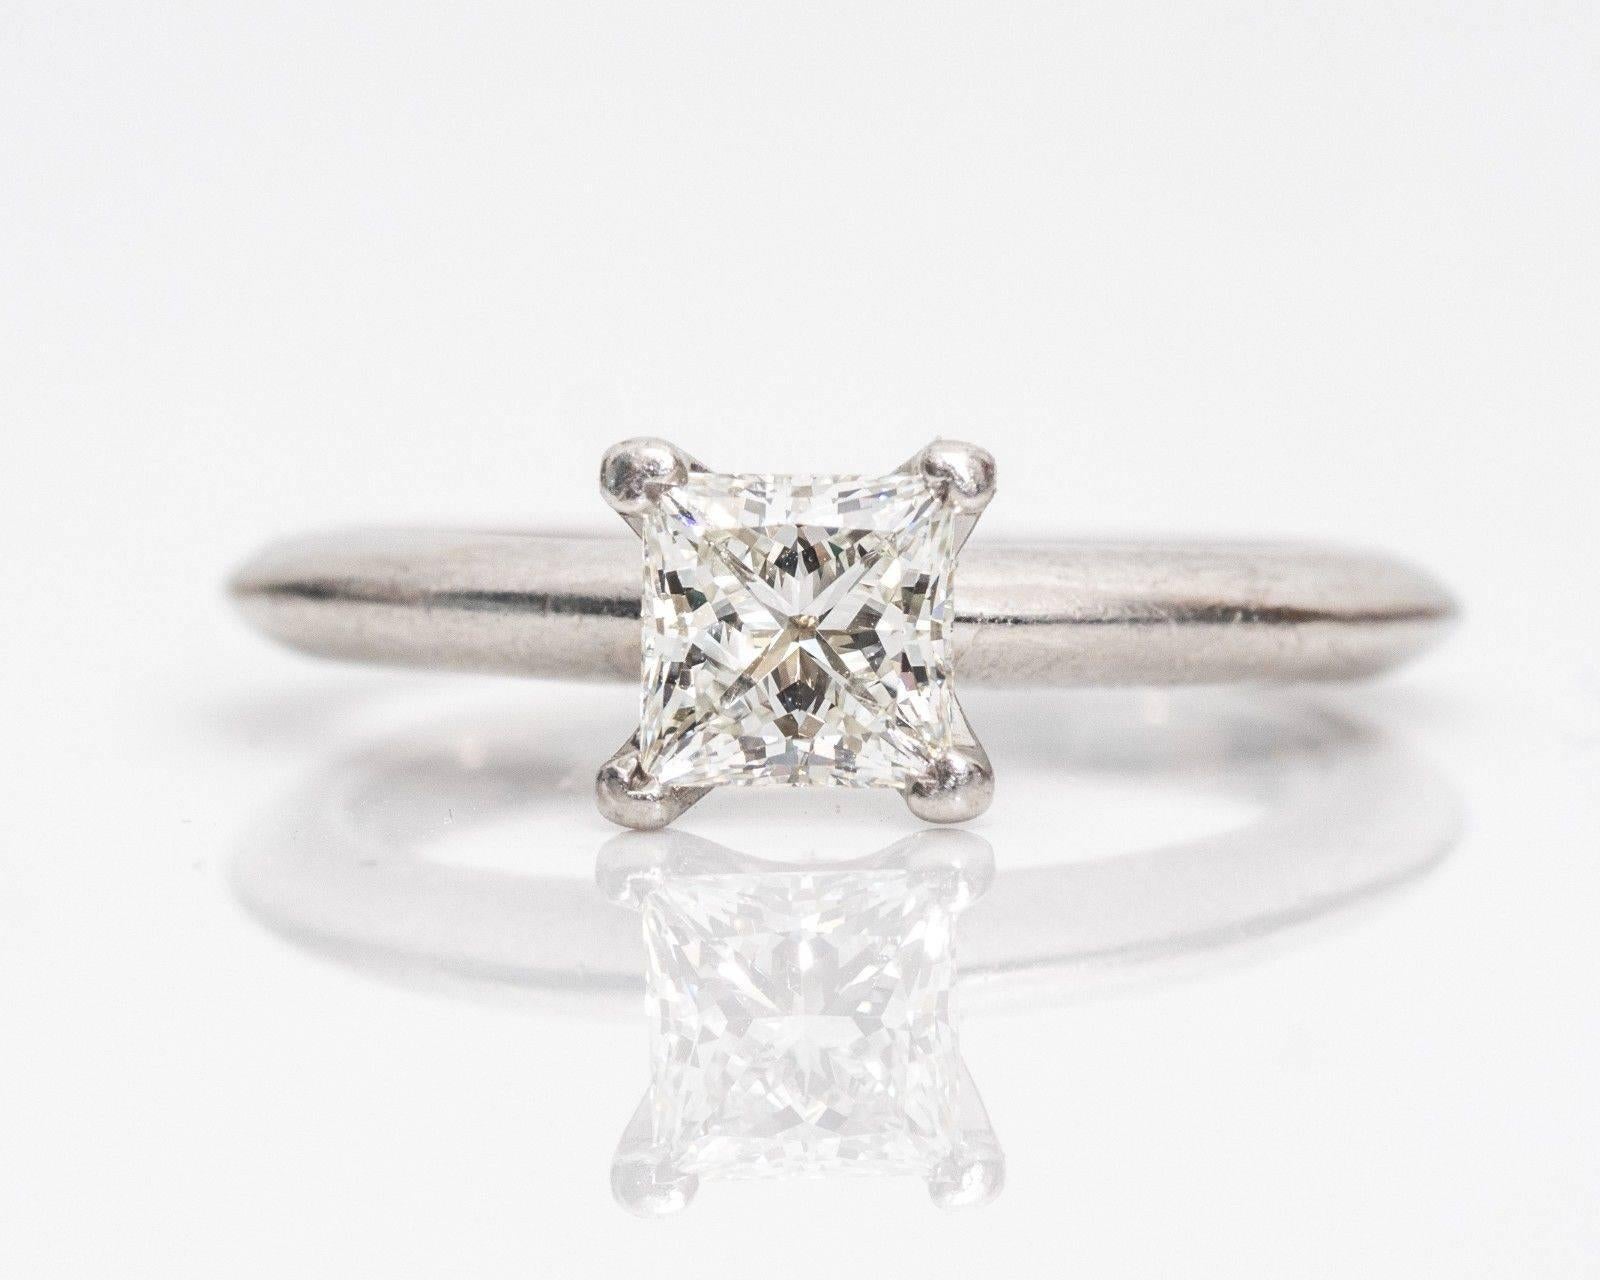 Wenn es stimmt, dass Einfachheit raffiniert ist, dann verkörpert dieser Ring Eleganz vom Feinsten! Der Ring kombiniert die Form eines Prinzessinnenschliffs mit dem Glanz eines runden Brillanten. Der quadratische modifizierte Brillant mit